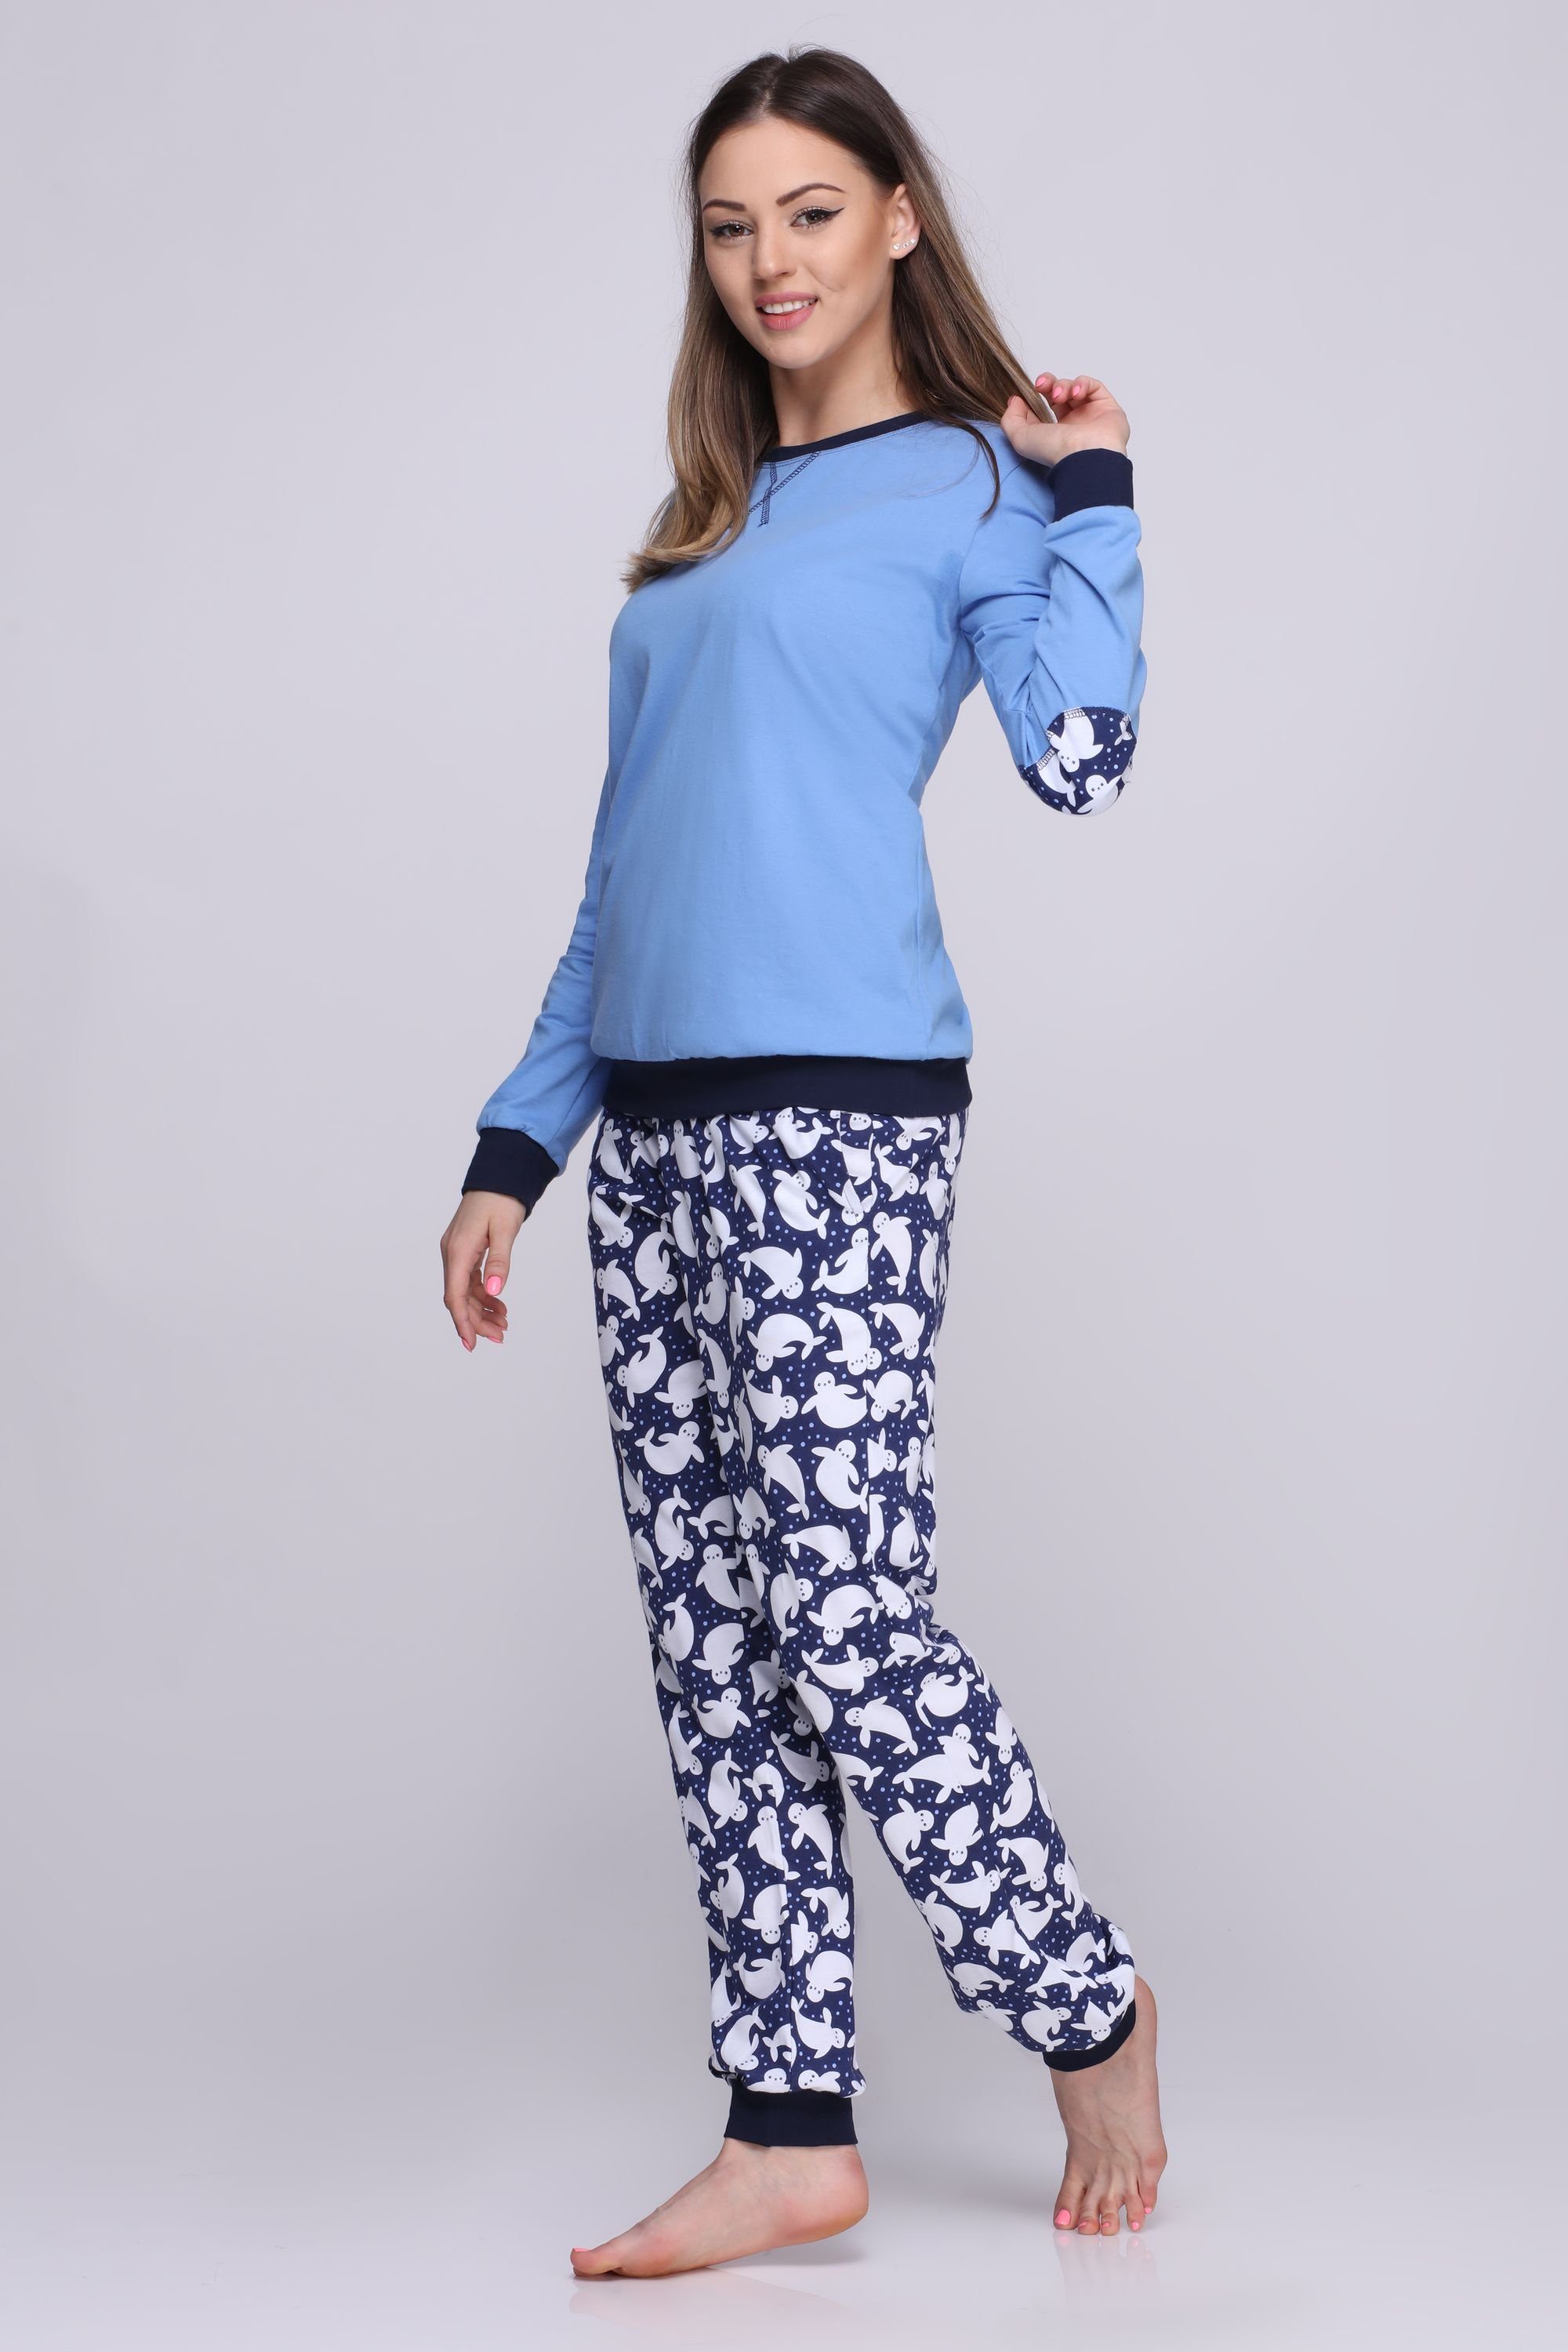 Schlafanzug MS10-168 Style Damen Blau Schlafanzug Merry Punkte